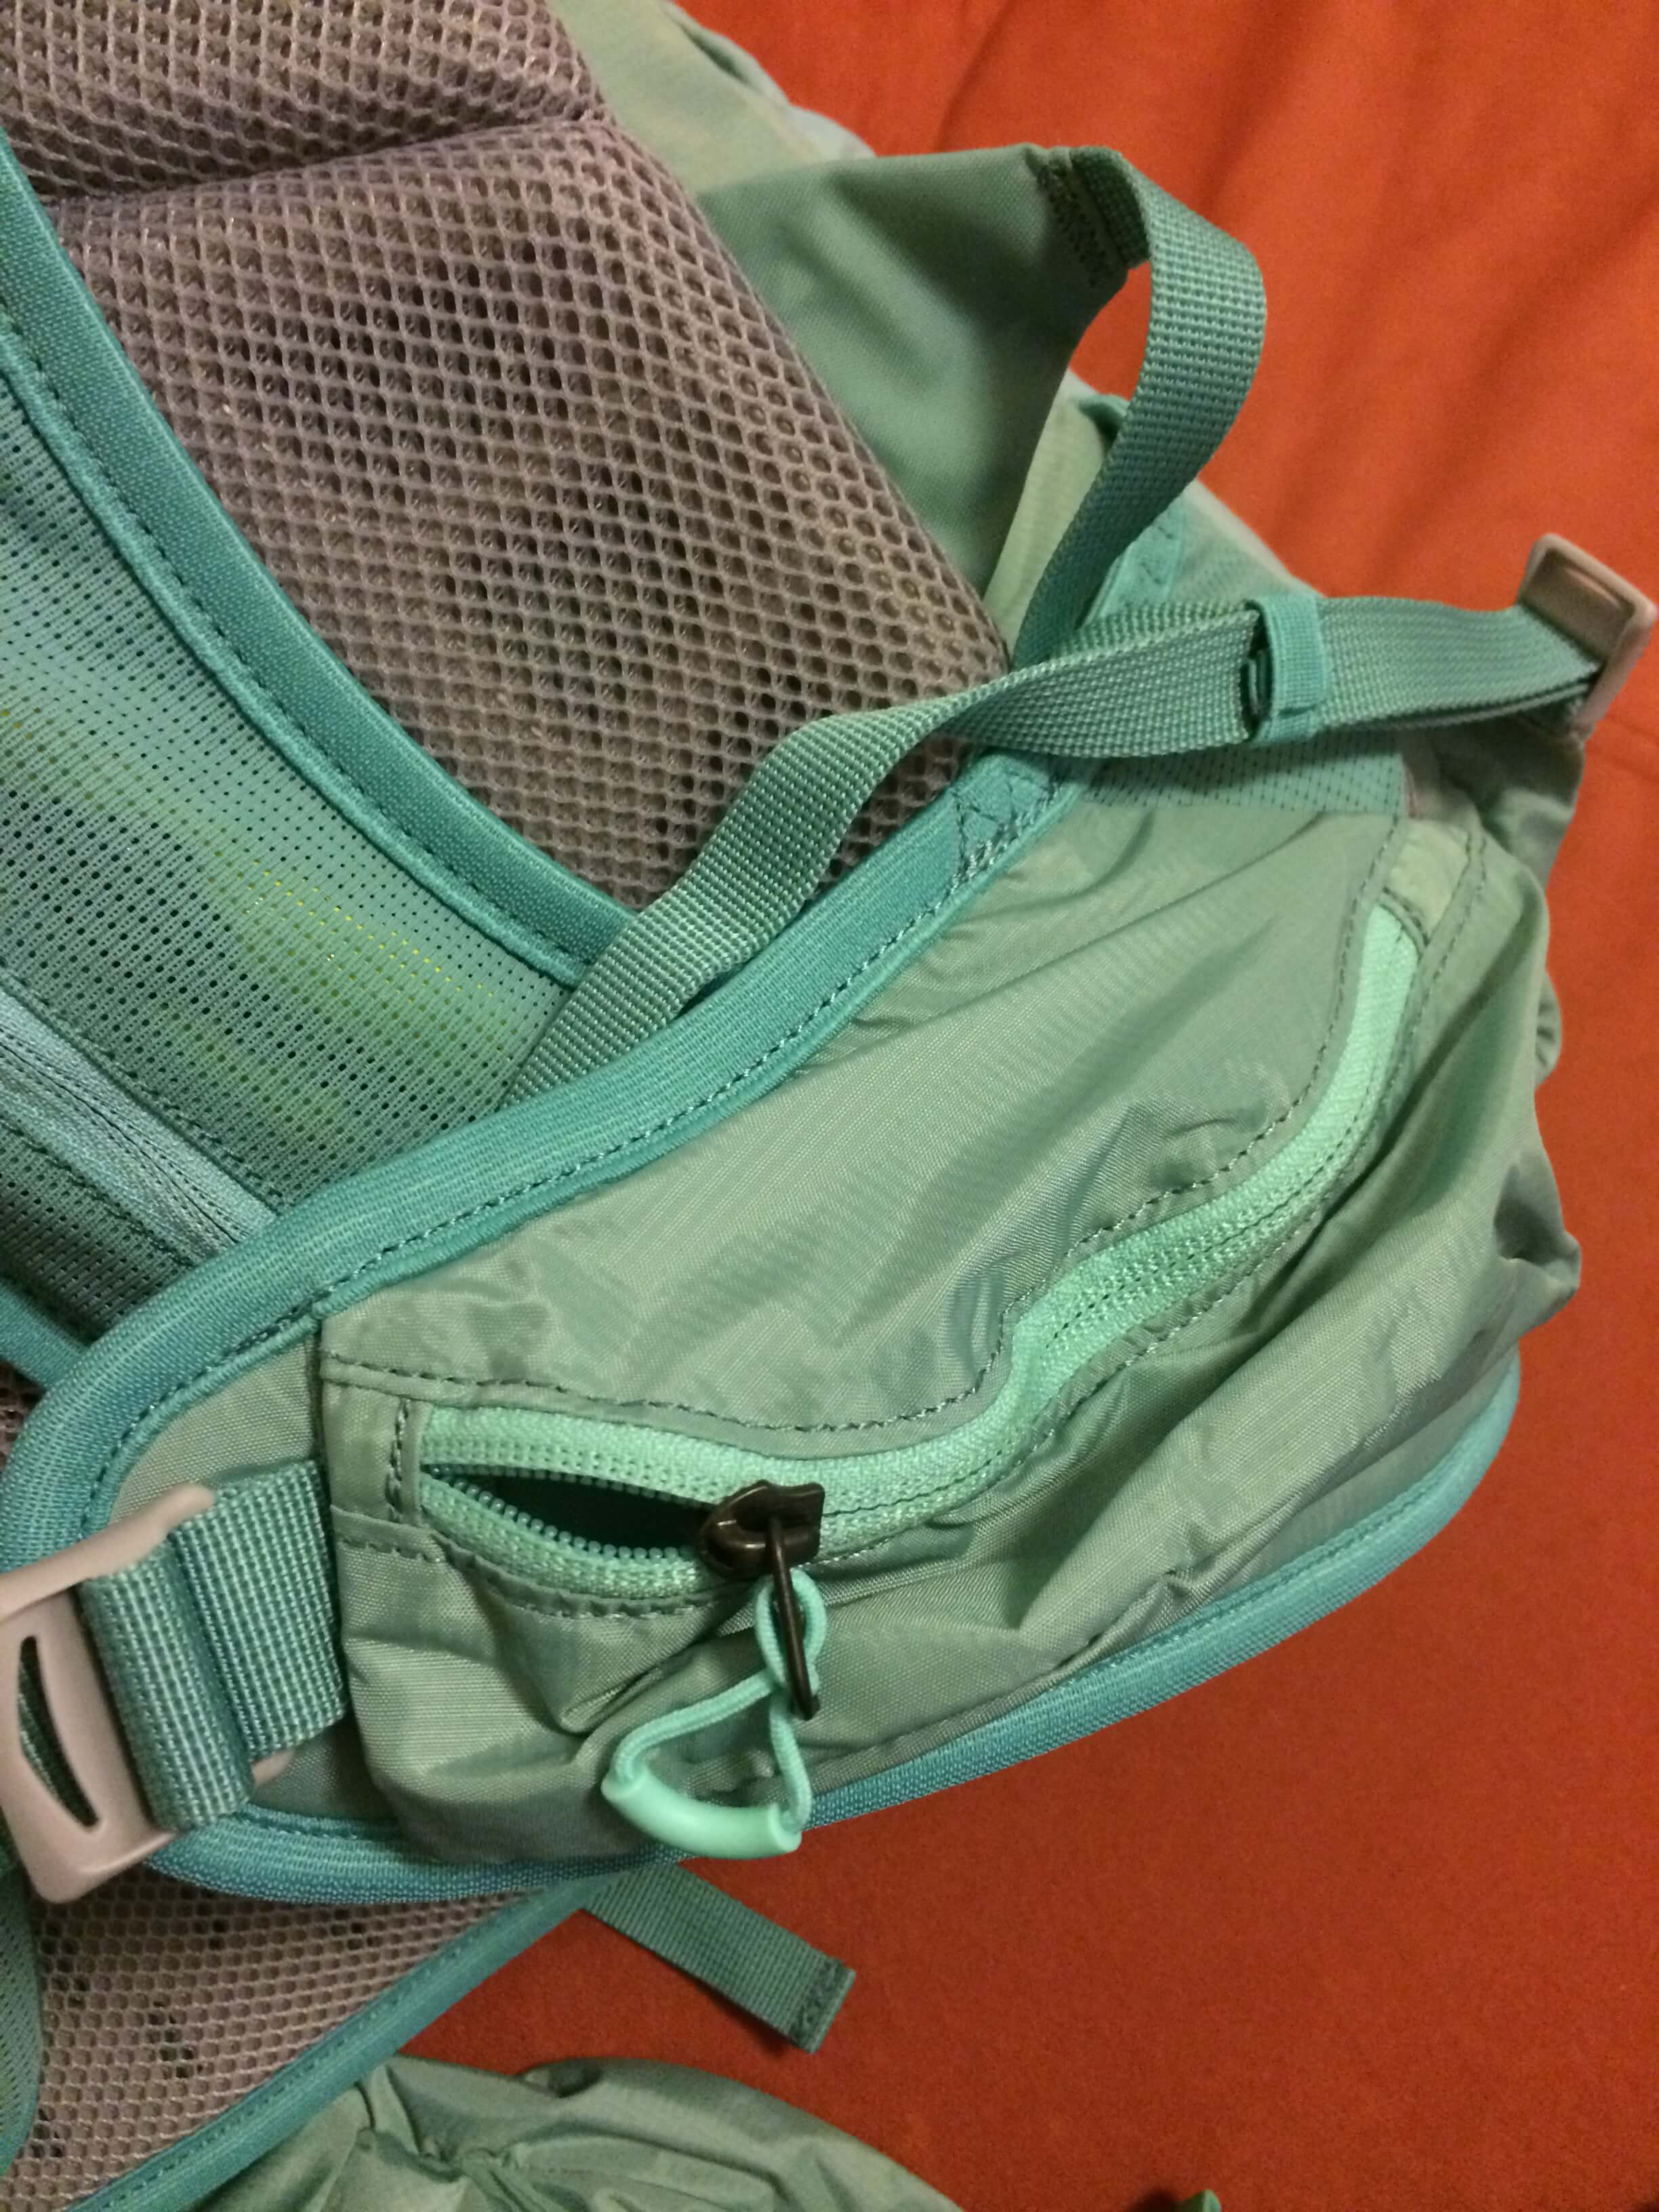 Kapsičky na bederním pásu batohu SALOMON OUT NIGHT 28+5 W třeba na kapesníky nebo outdoorové drobnosti.